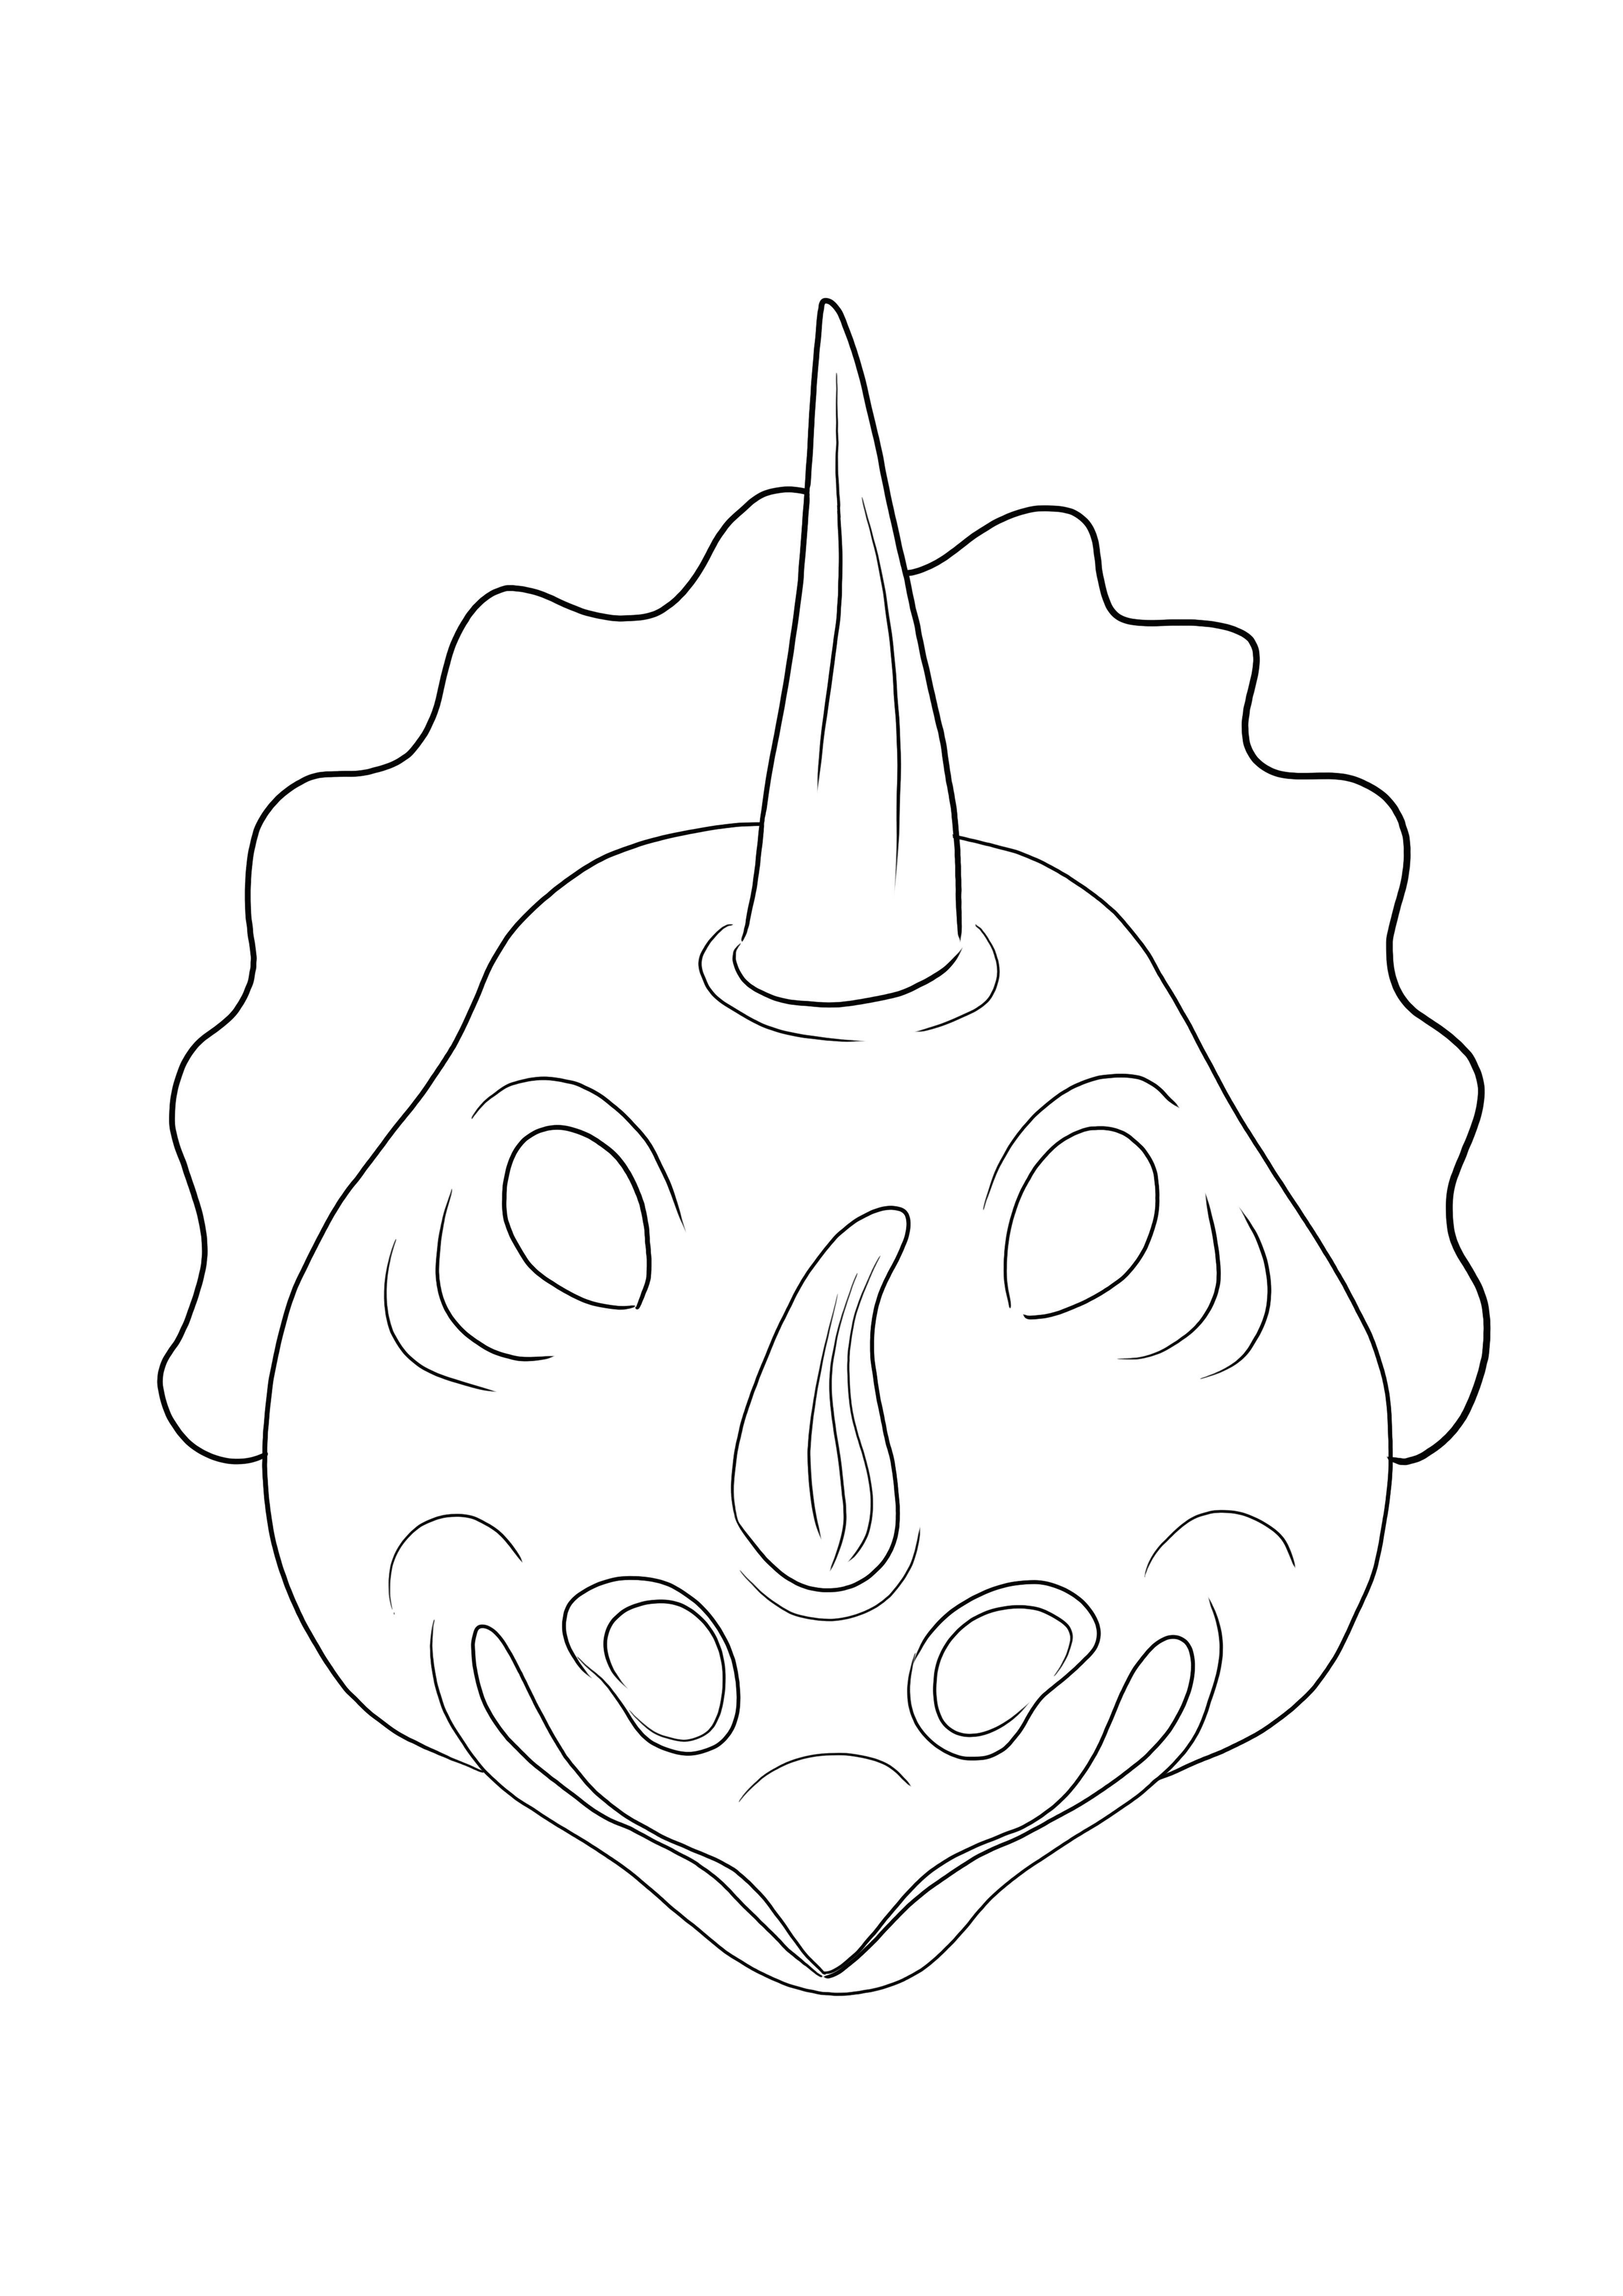 Einfaches Ausmalen der Triceratops Maske gratis zum Download oder Ausdrucken